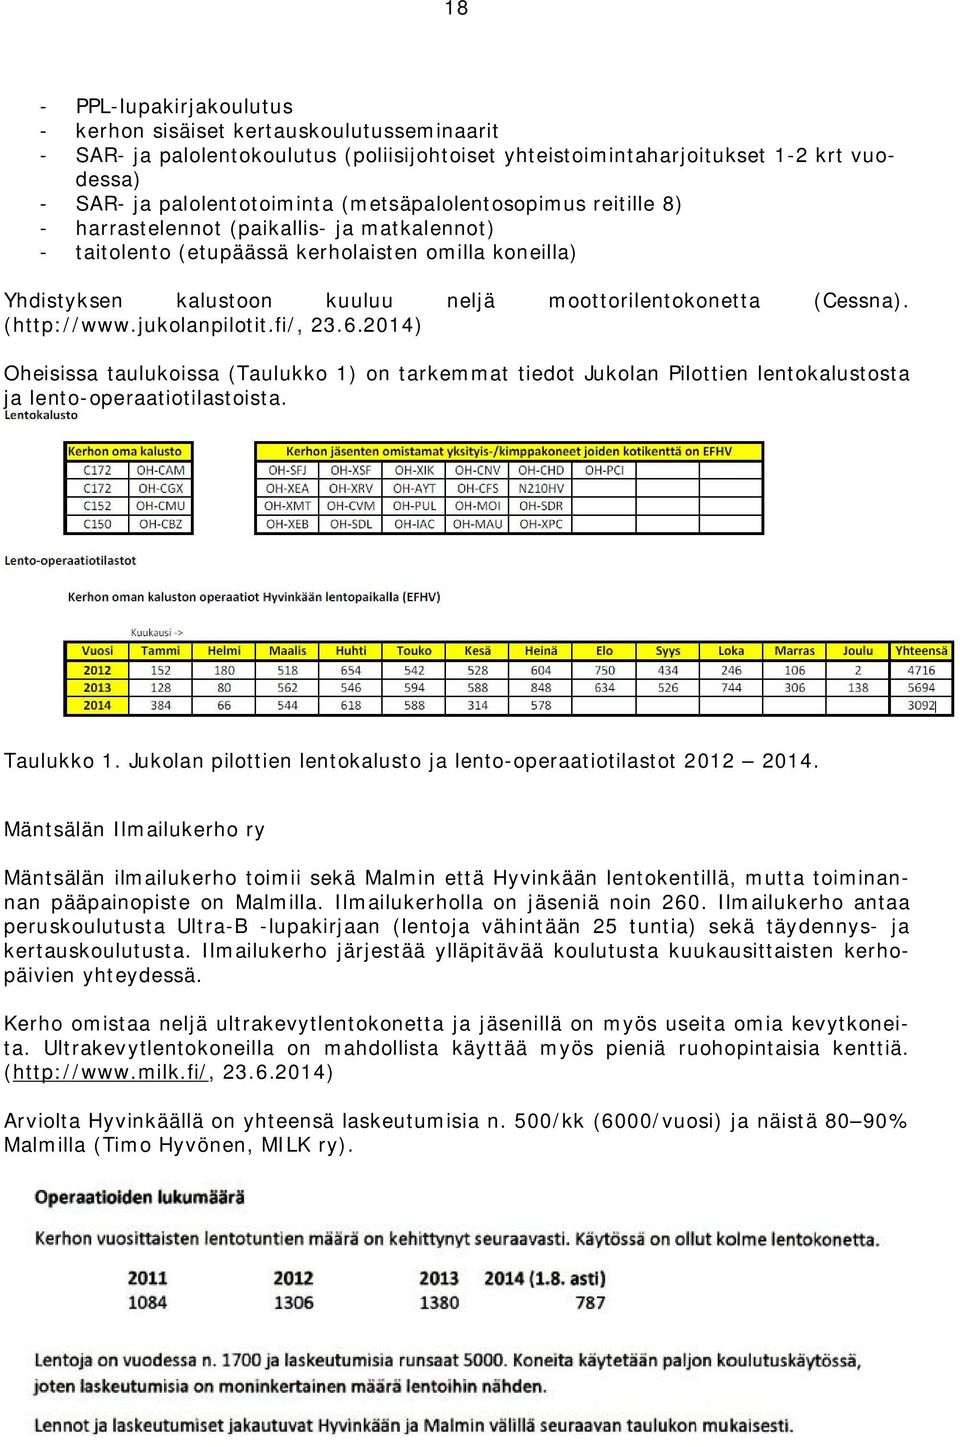 (http://www.jukolanpilotit.fi/, 23.6.2014) Oheisissa taulukoissa (Taulukko 1) on tarkemmat tiedot Jukolan Pilottien lentokalustosta ja lento-operaatiotilastoista. Taulukko 1.